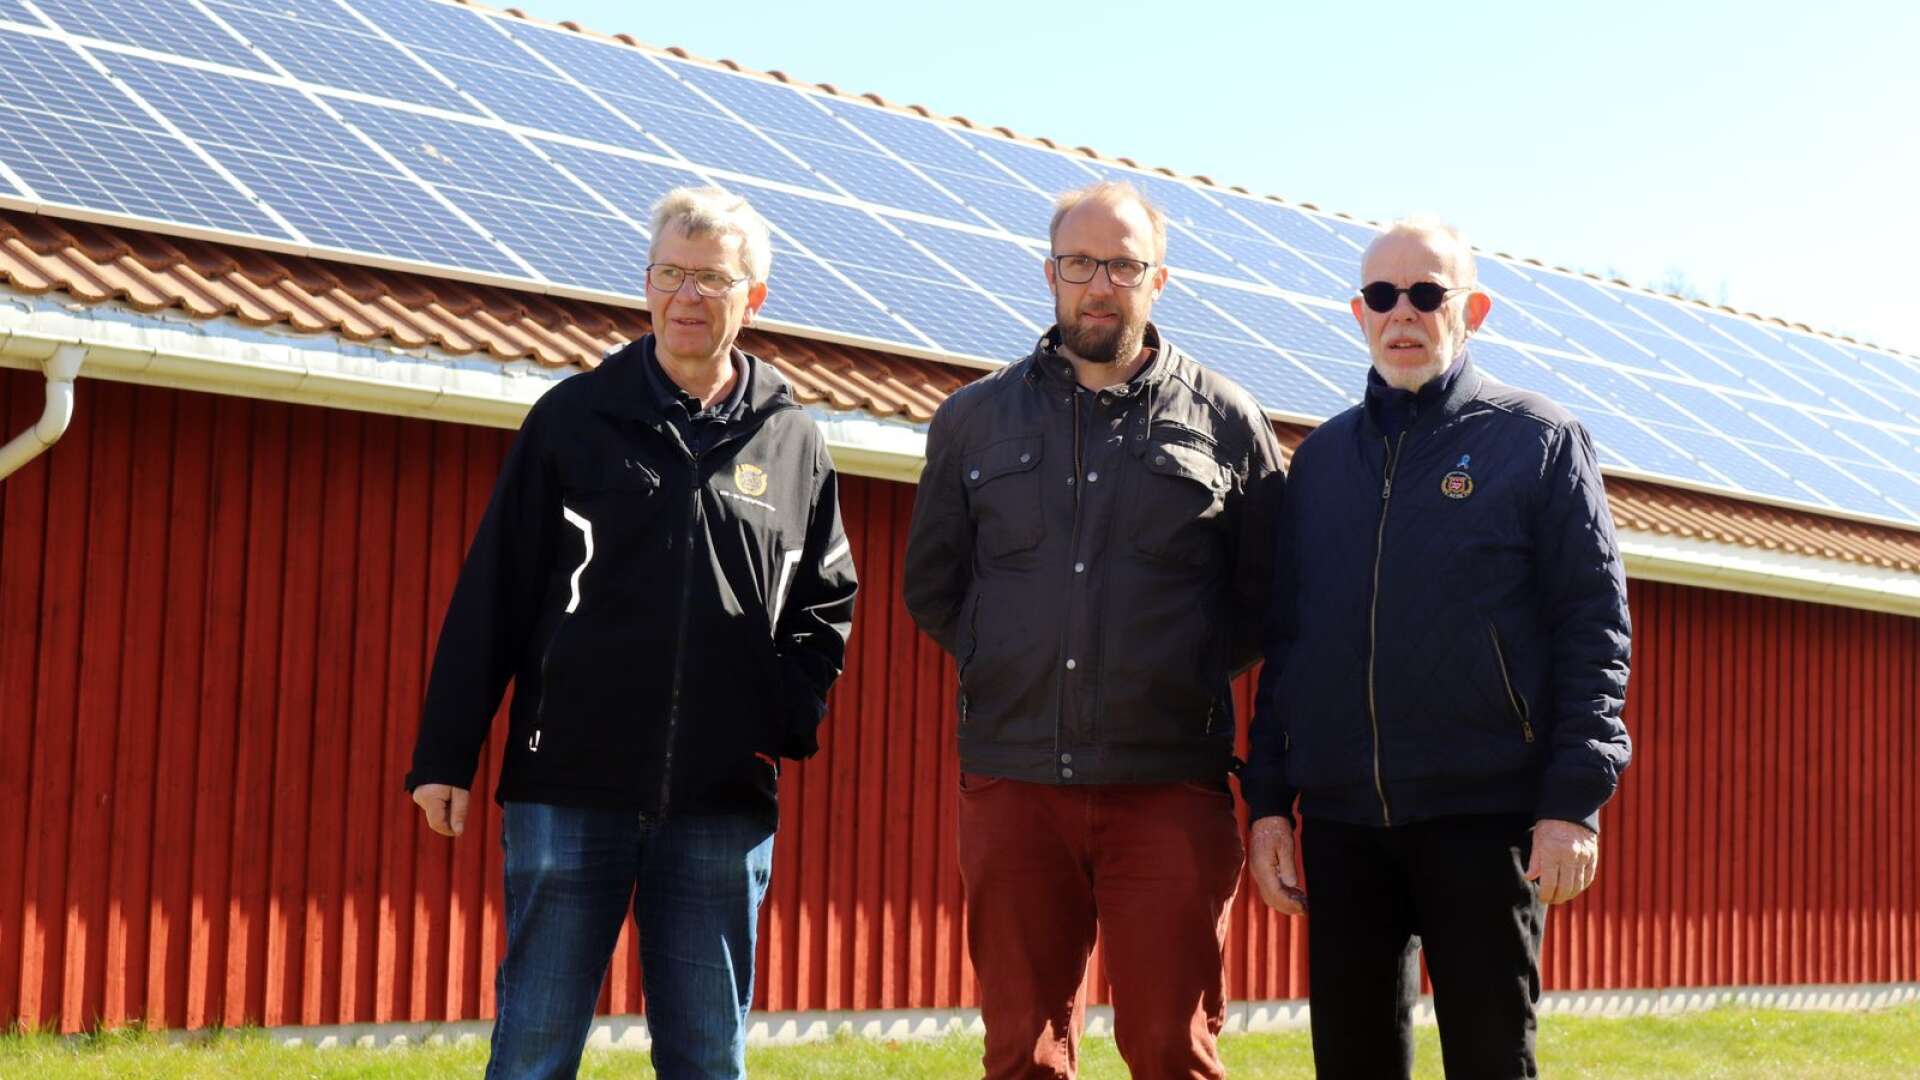 Lars Nordgren, projektledare, Erik Stjernberg, avdelningschef HSB Värmland energiavdelning, och Bernt Tiberg, vice värd Brf Tullporten, står framför nyinstallerade solpaneler.